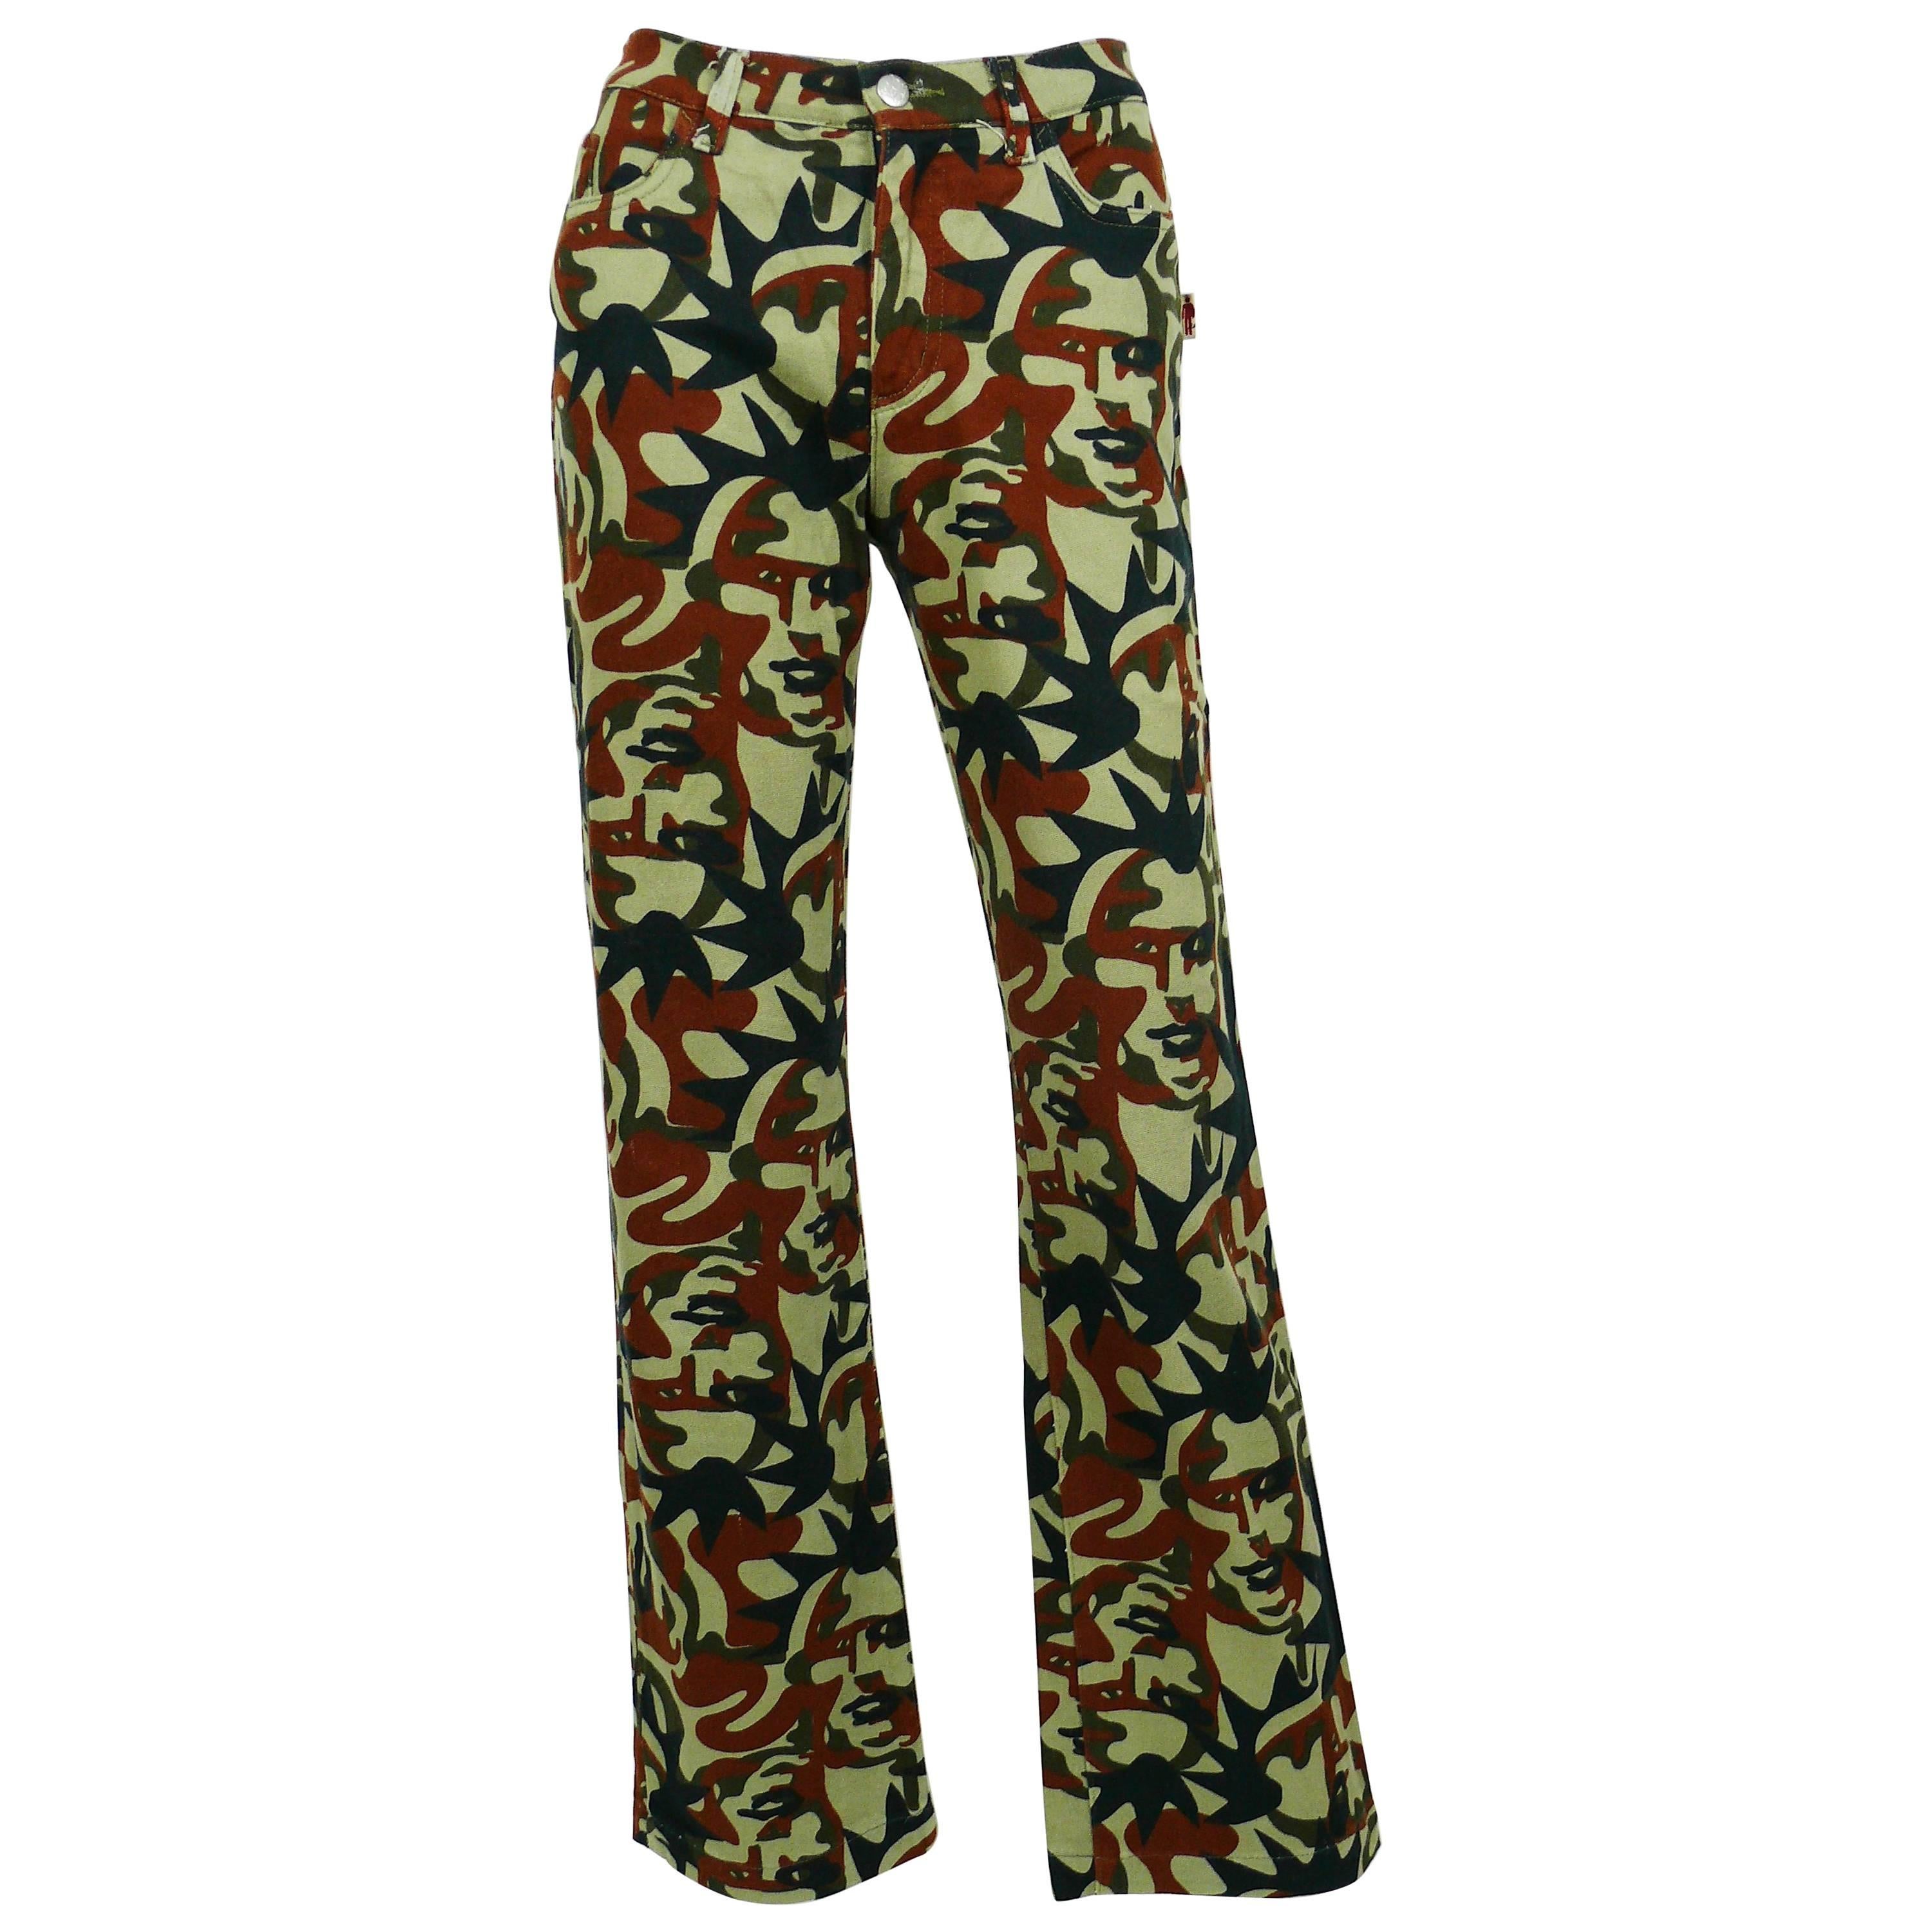 Jean Paul Gaultier Vintage Camouflage Faces Pants Trousers